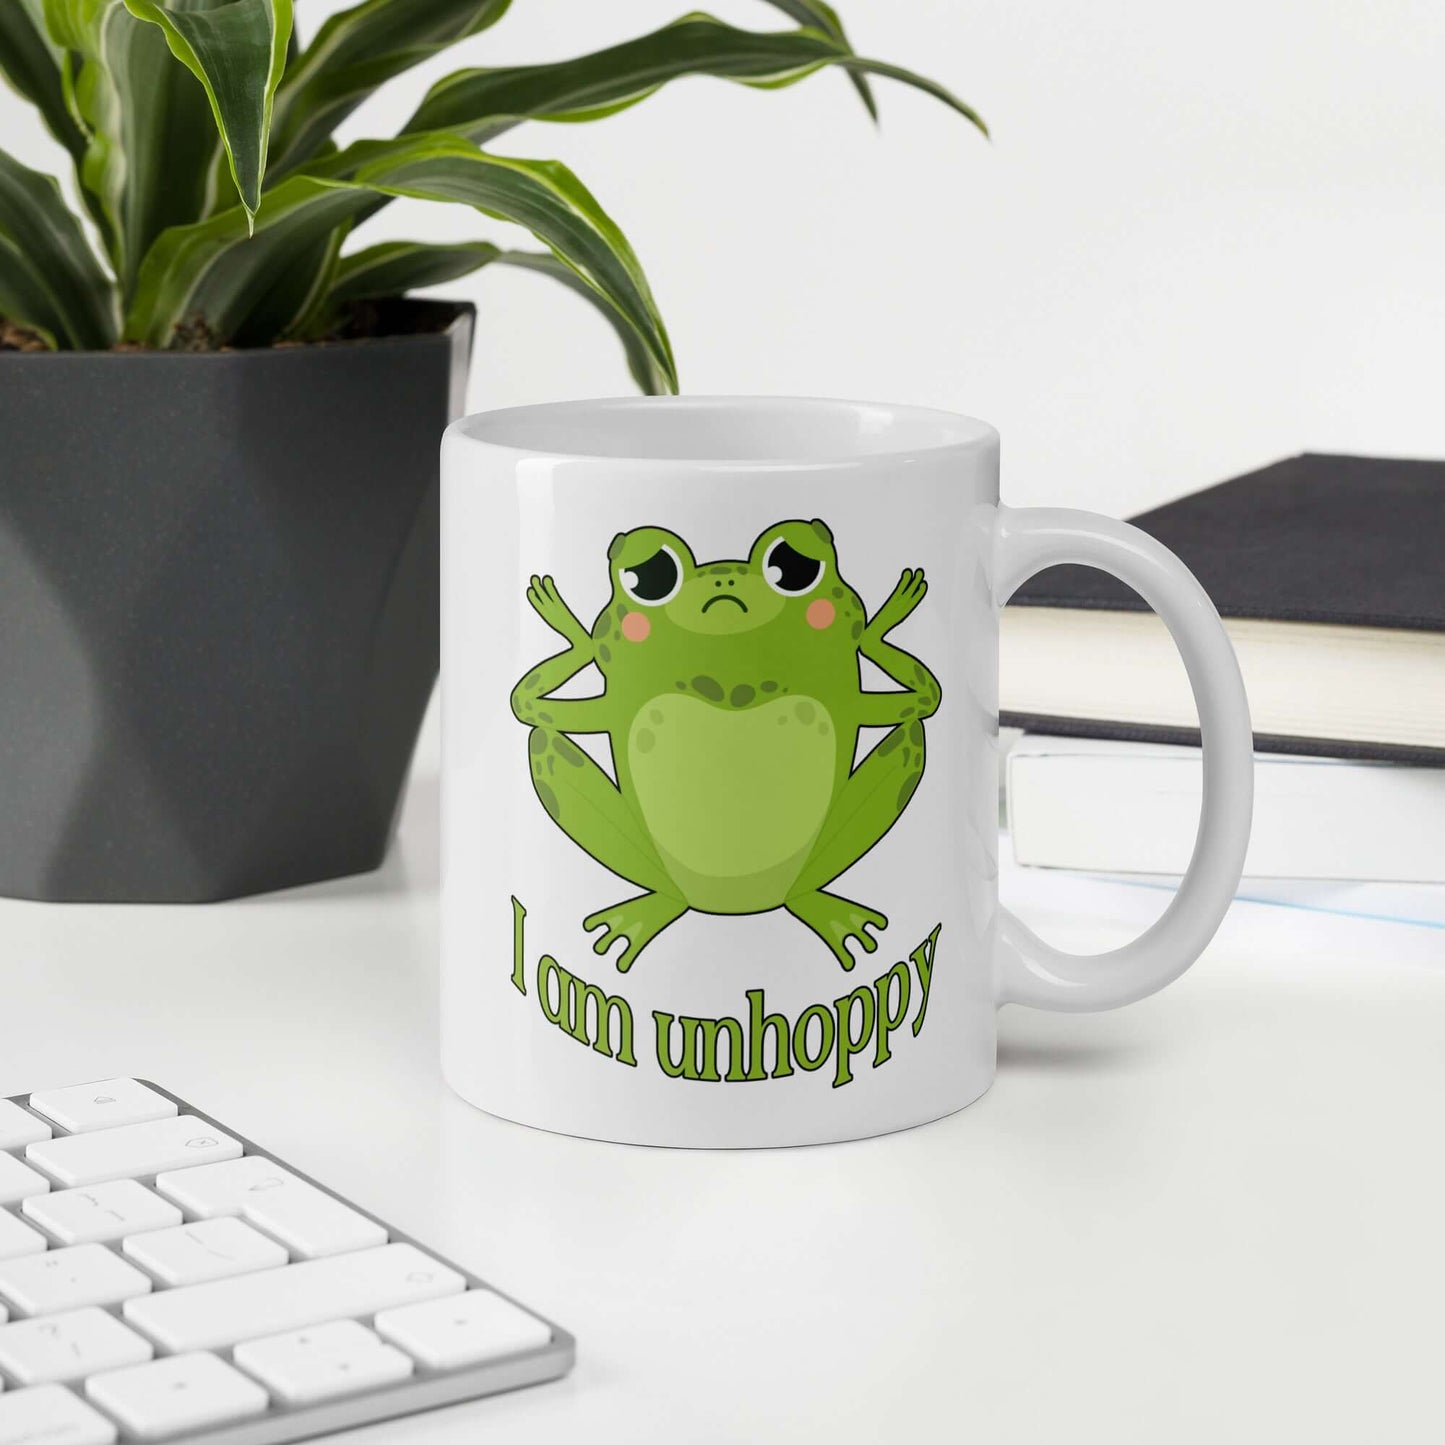 I am unhoppy sad frog unhappy pun mug